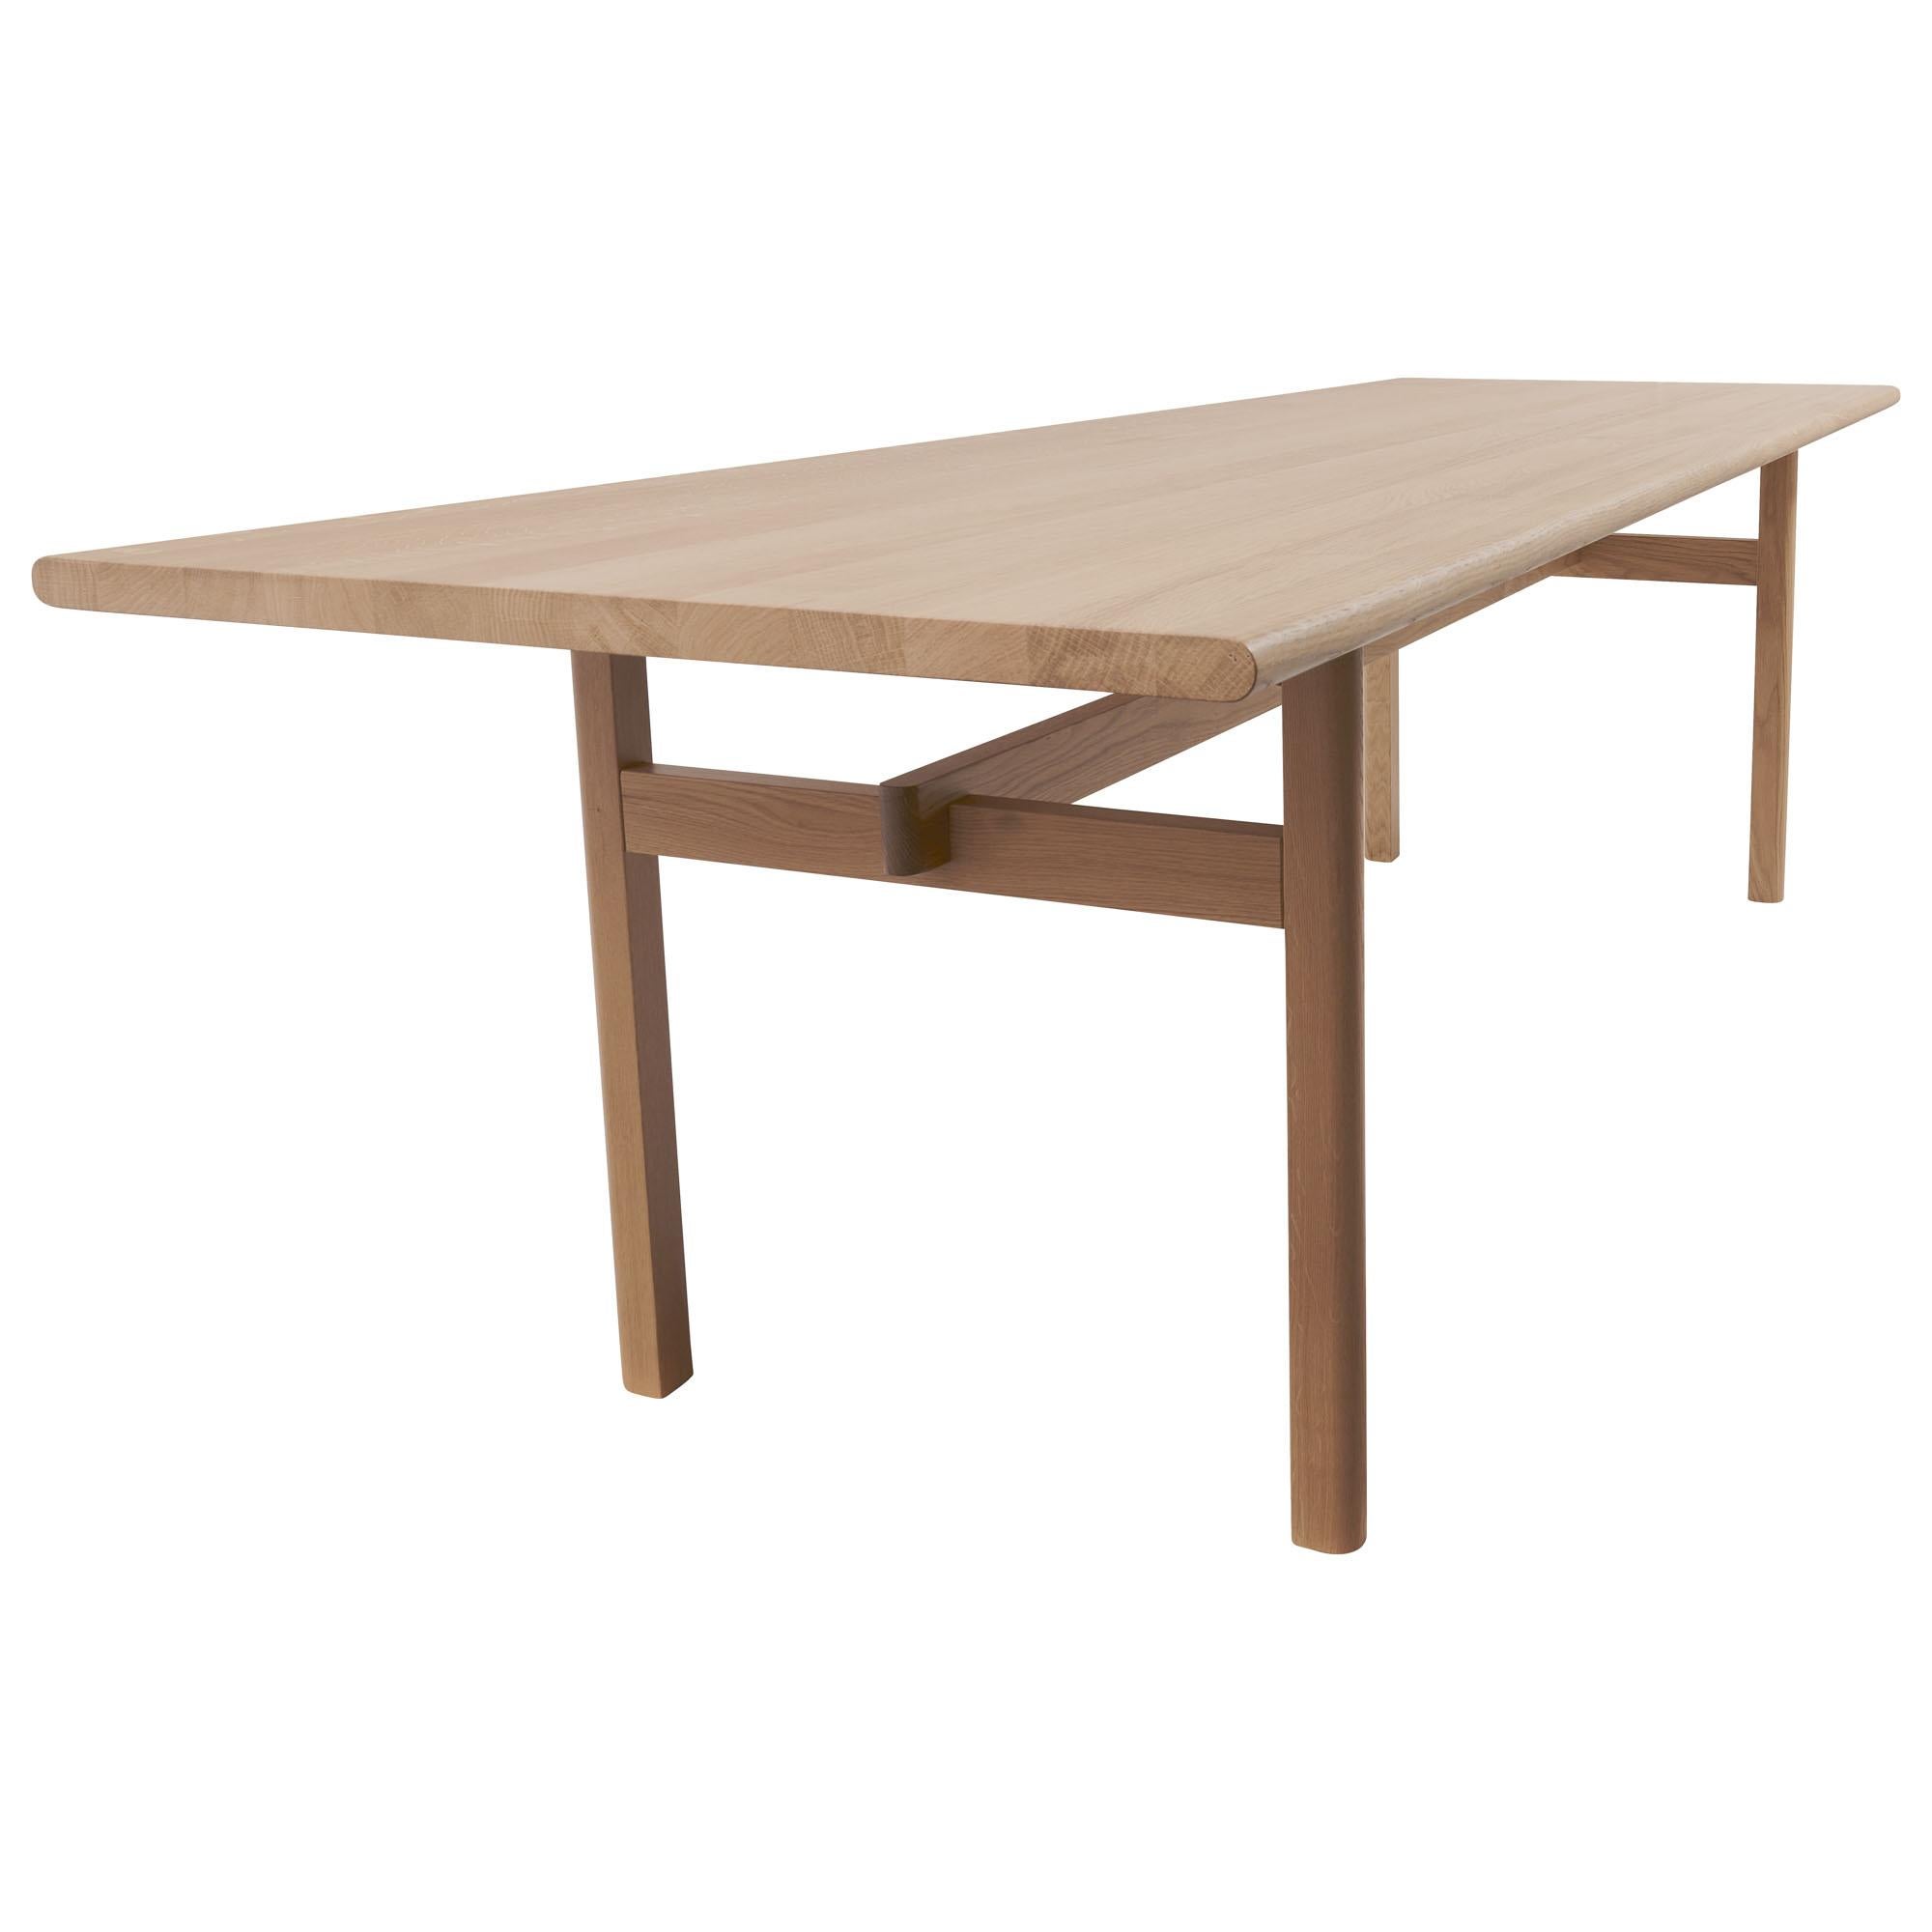 La table à manger Mokki a été conçue par Salla Luhtasela et Wesley Walters du Studio Kaksikko de Finlande. Sa finition met en valeur les qualités naturellement belles du chêne massif. Ses détails modernistes rappellent le design du milieu du siècle